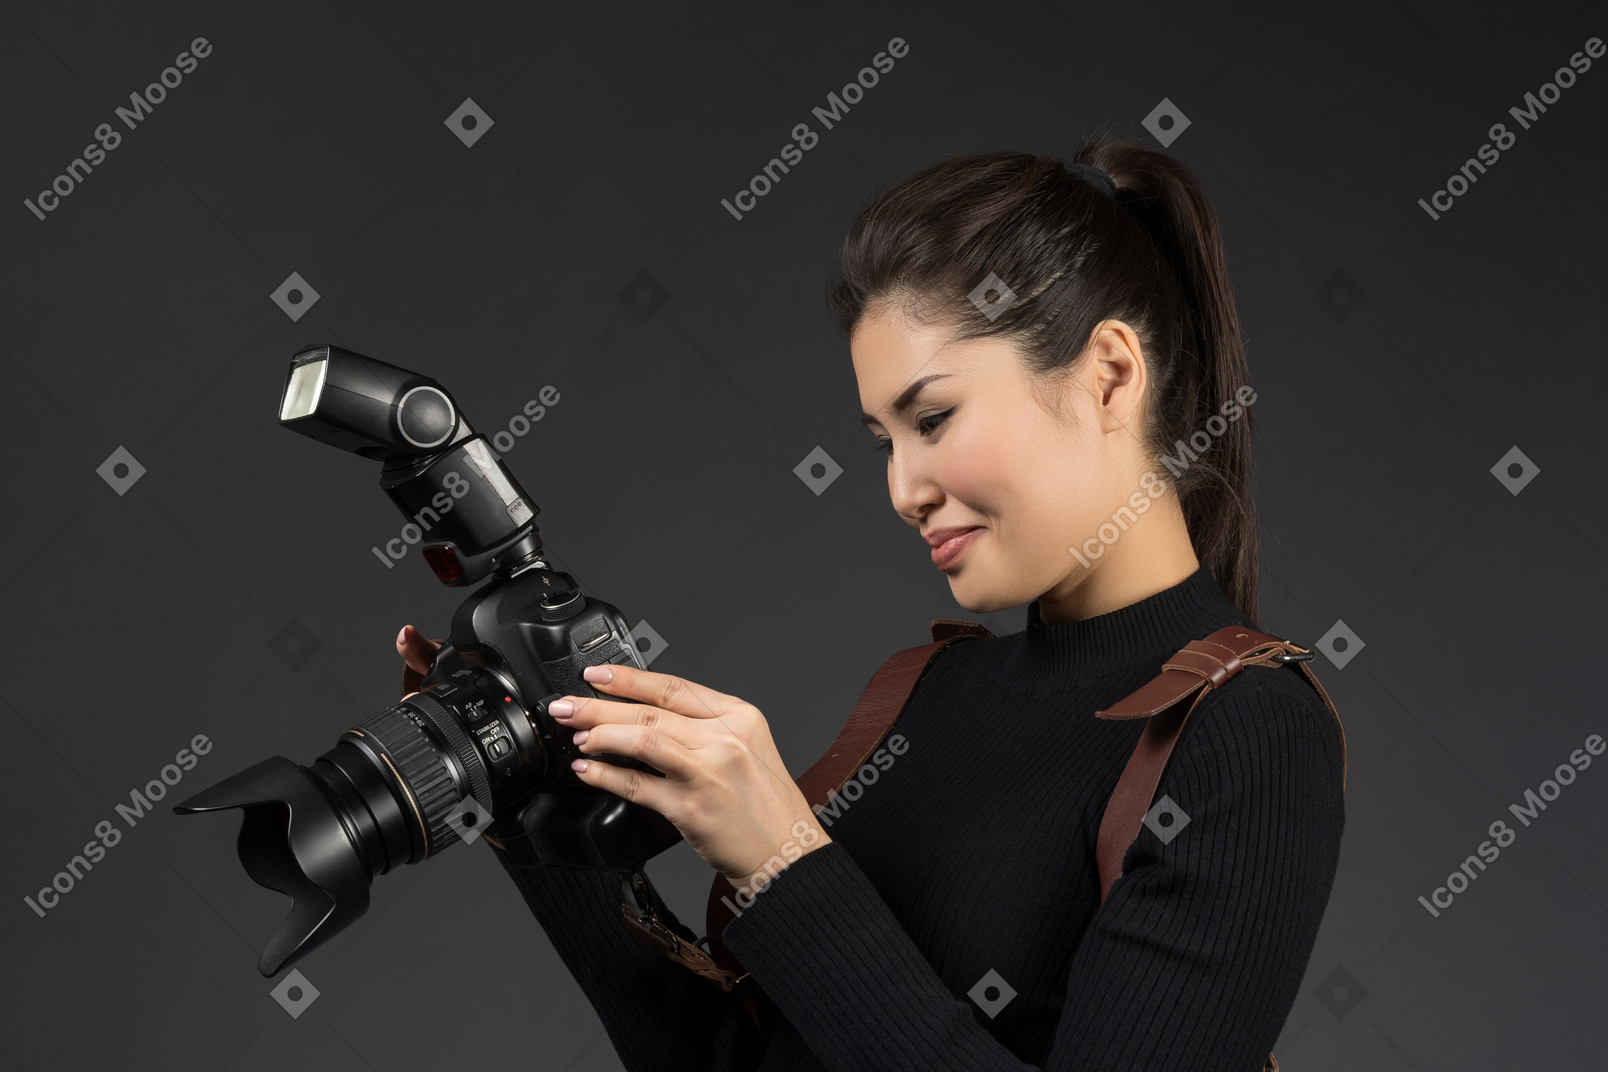 Female photographer checking snapshots